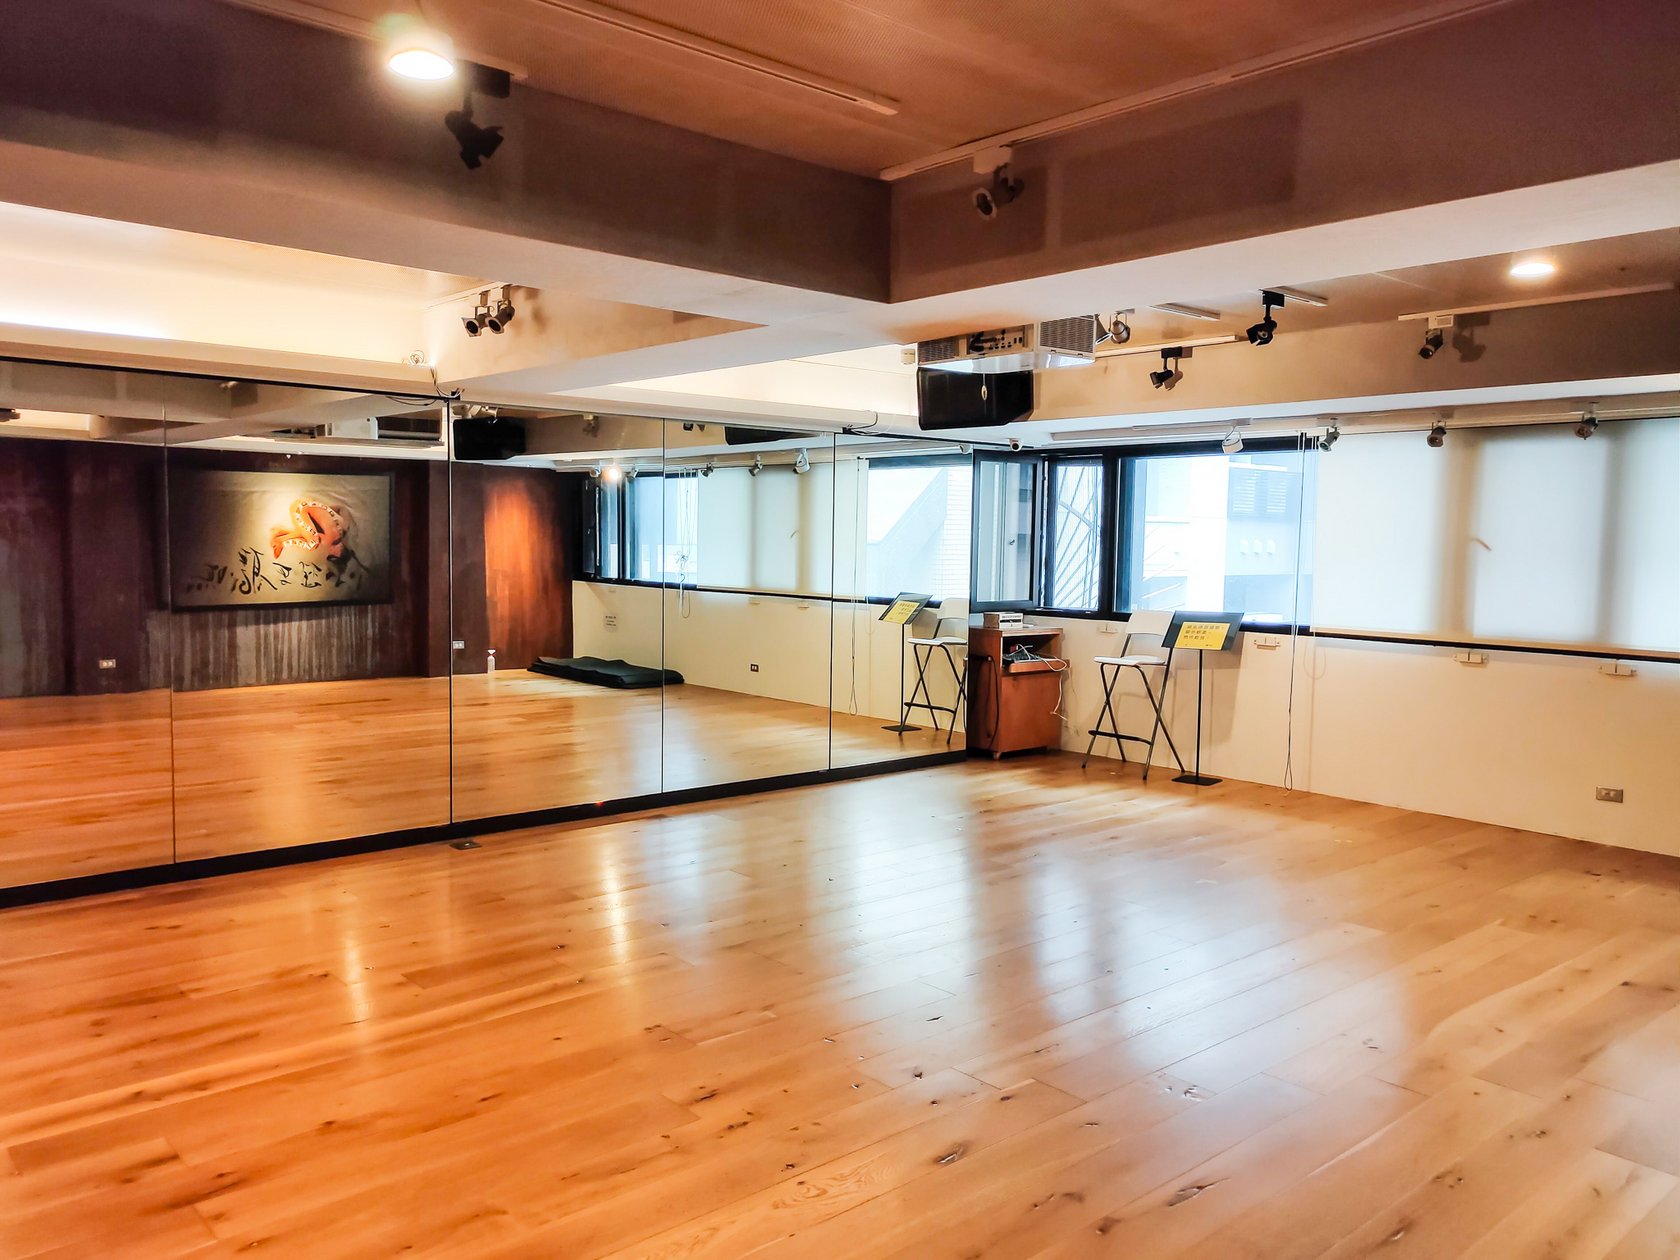 舞蹈教室 六號實驗室當代舞蹈藝術學院